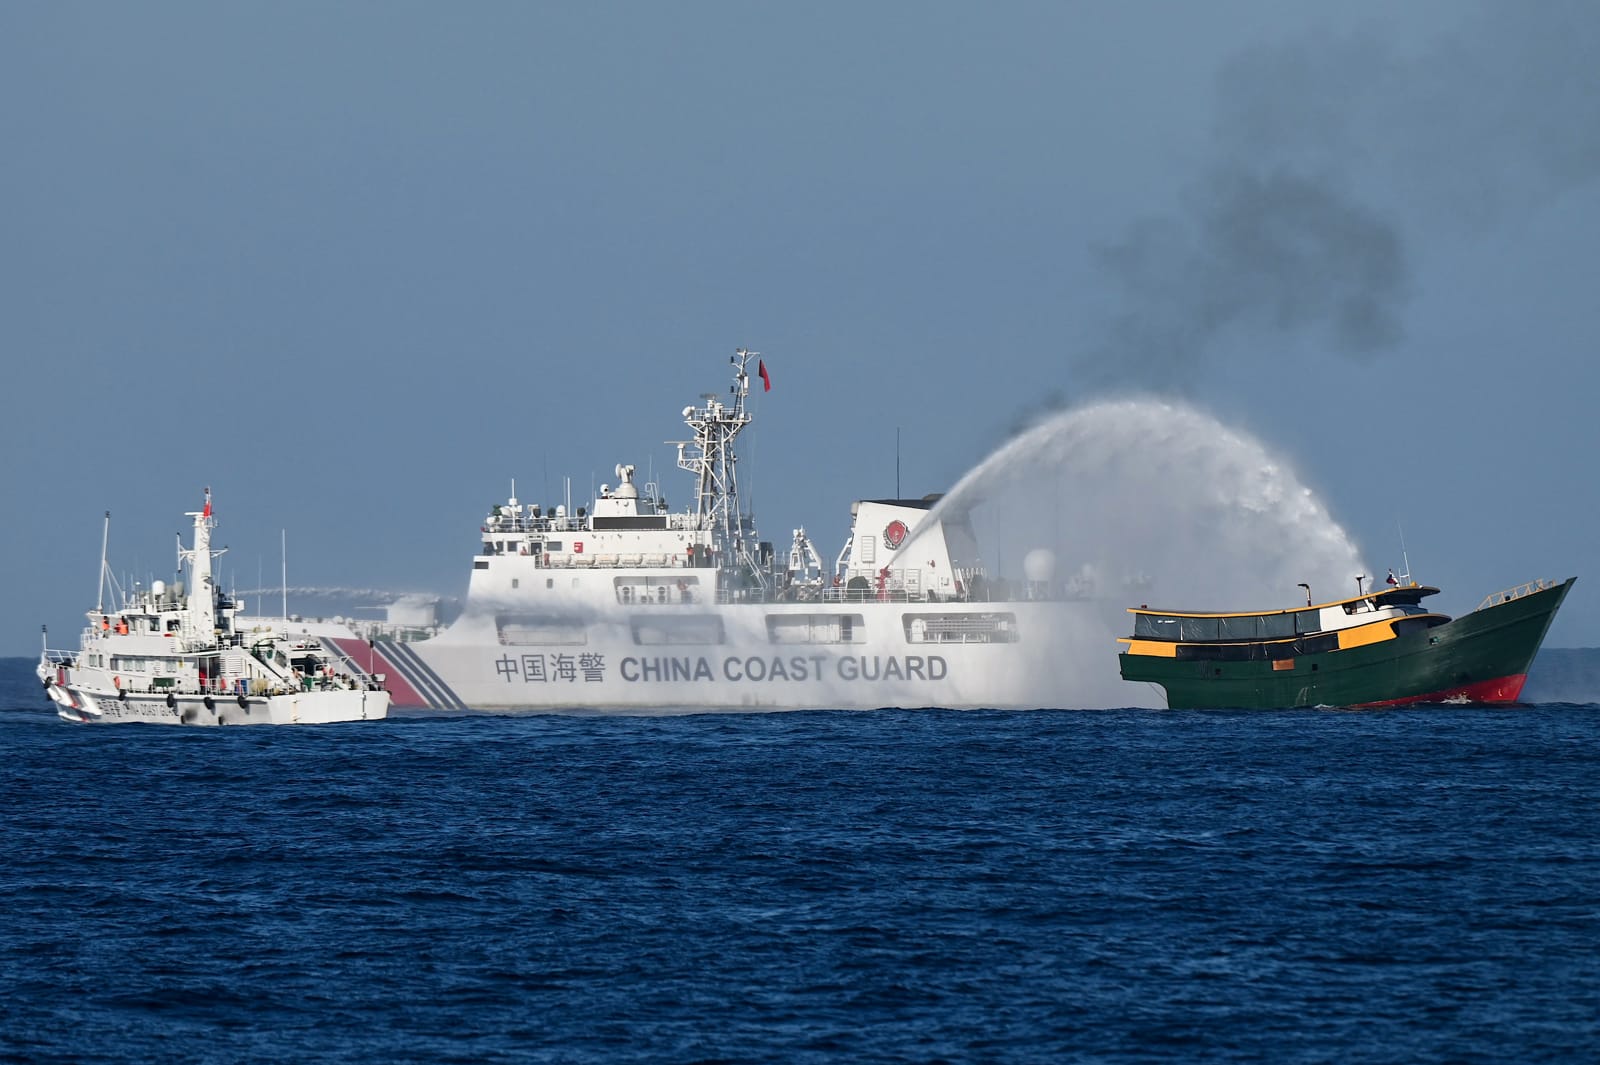 了解中国控制南海和台海问题的努力